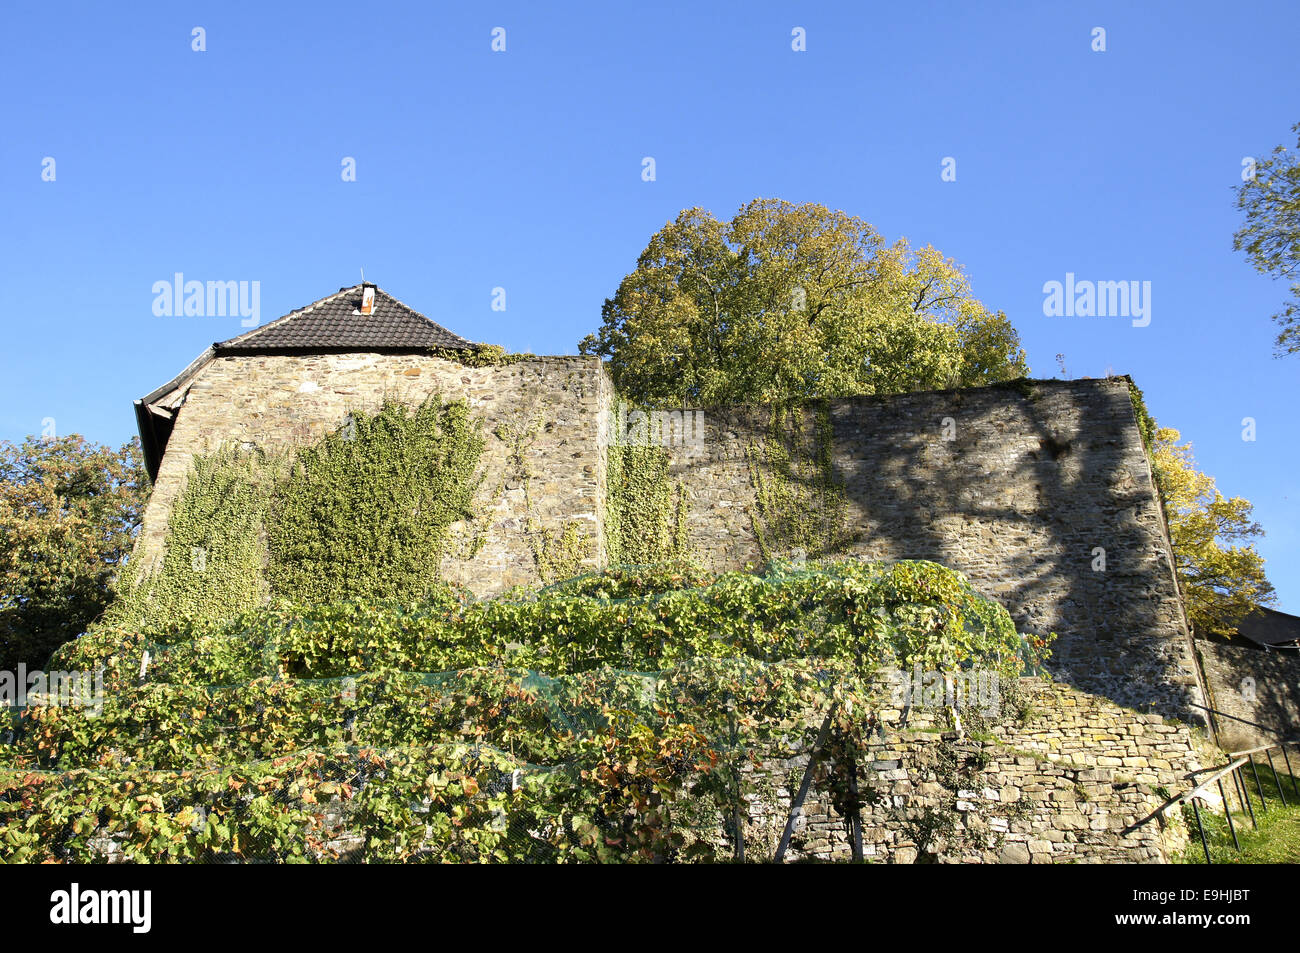 Castle Hohenlimburg near Hagen, Germany Stock Photo